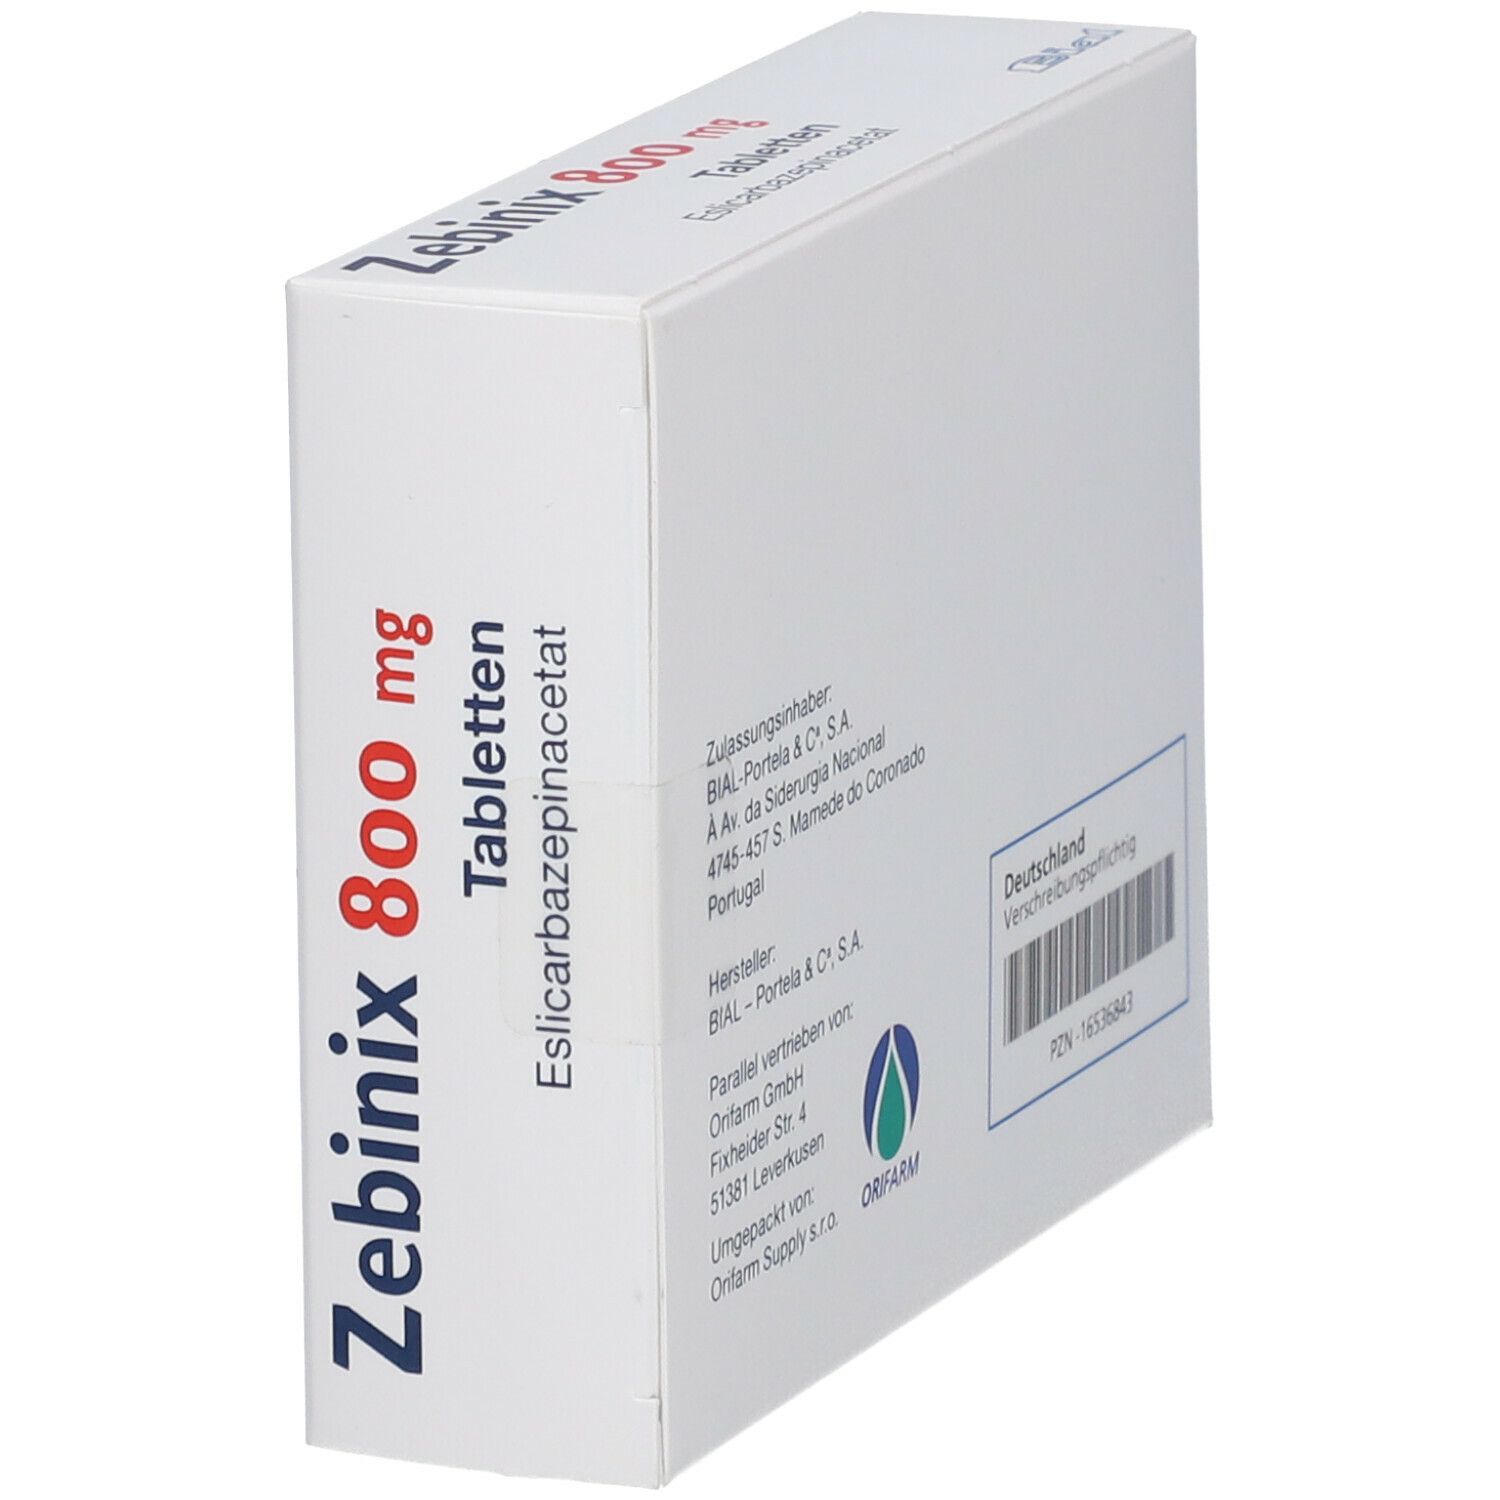 Zebinix 800 mg